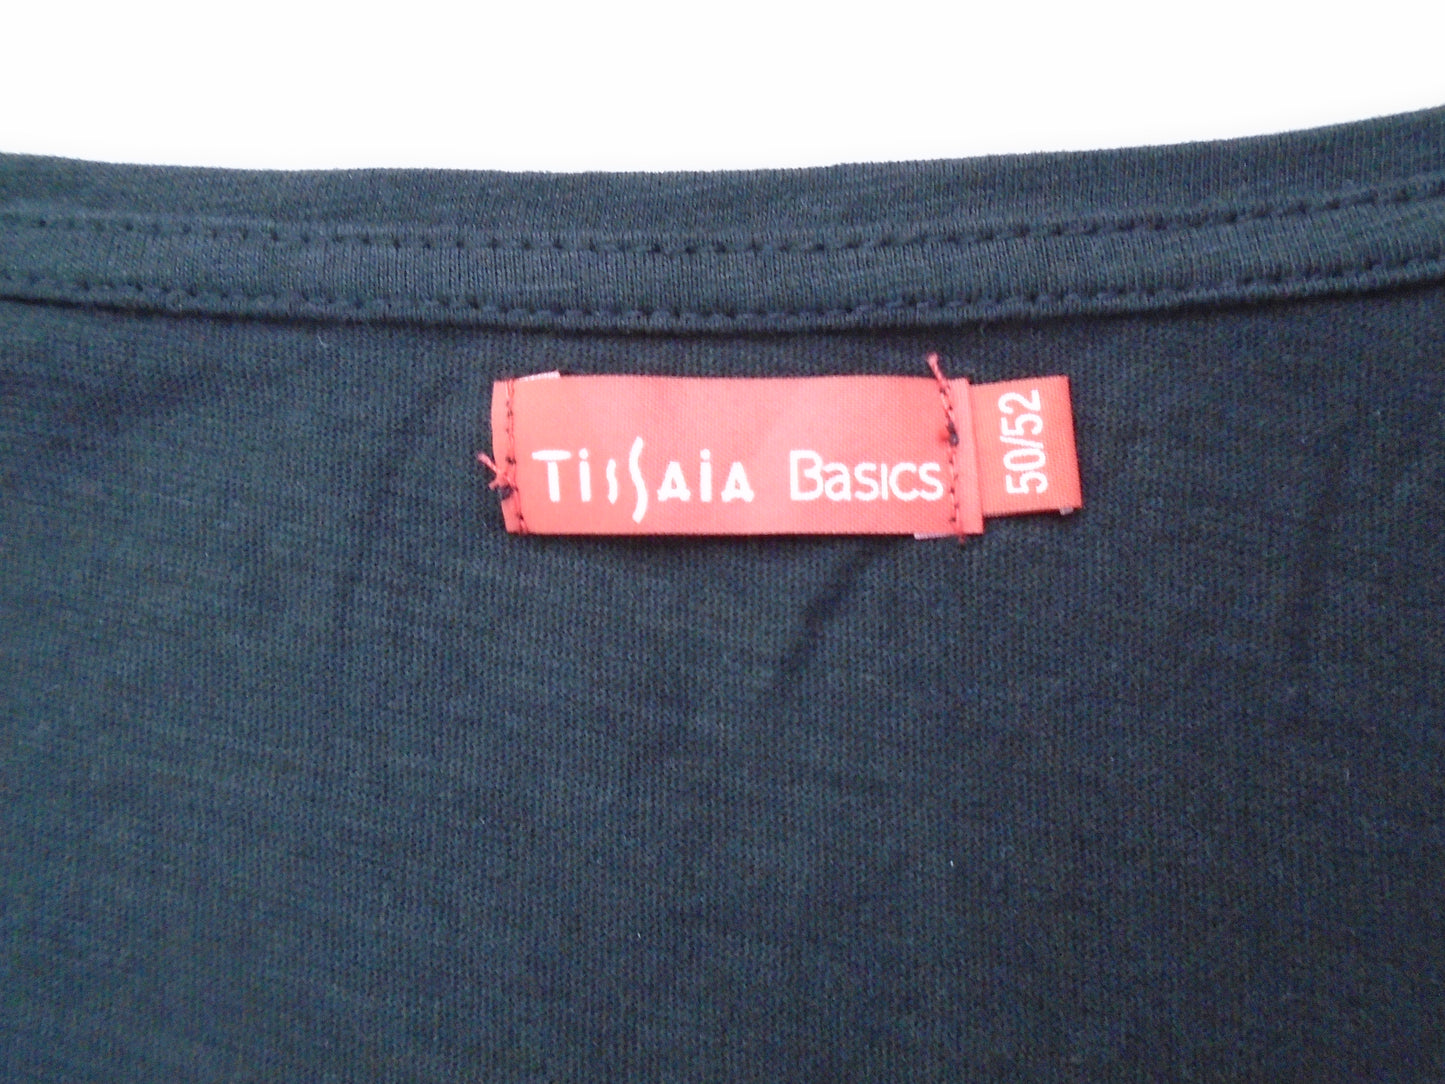 Camiseta Hombre Tissaia. De color negro. Talla: L. Estado: Usado.(Muy buen estado). | 11920775